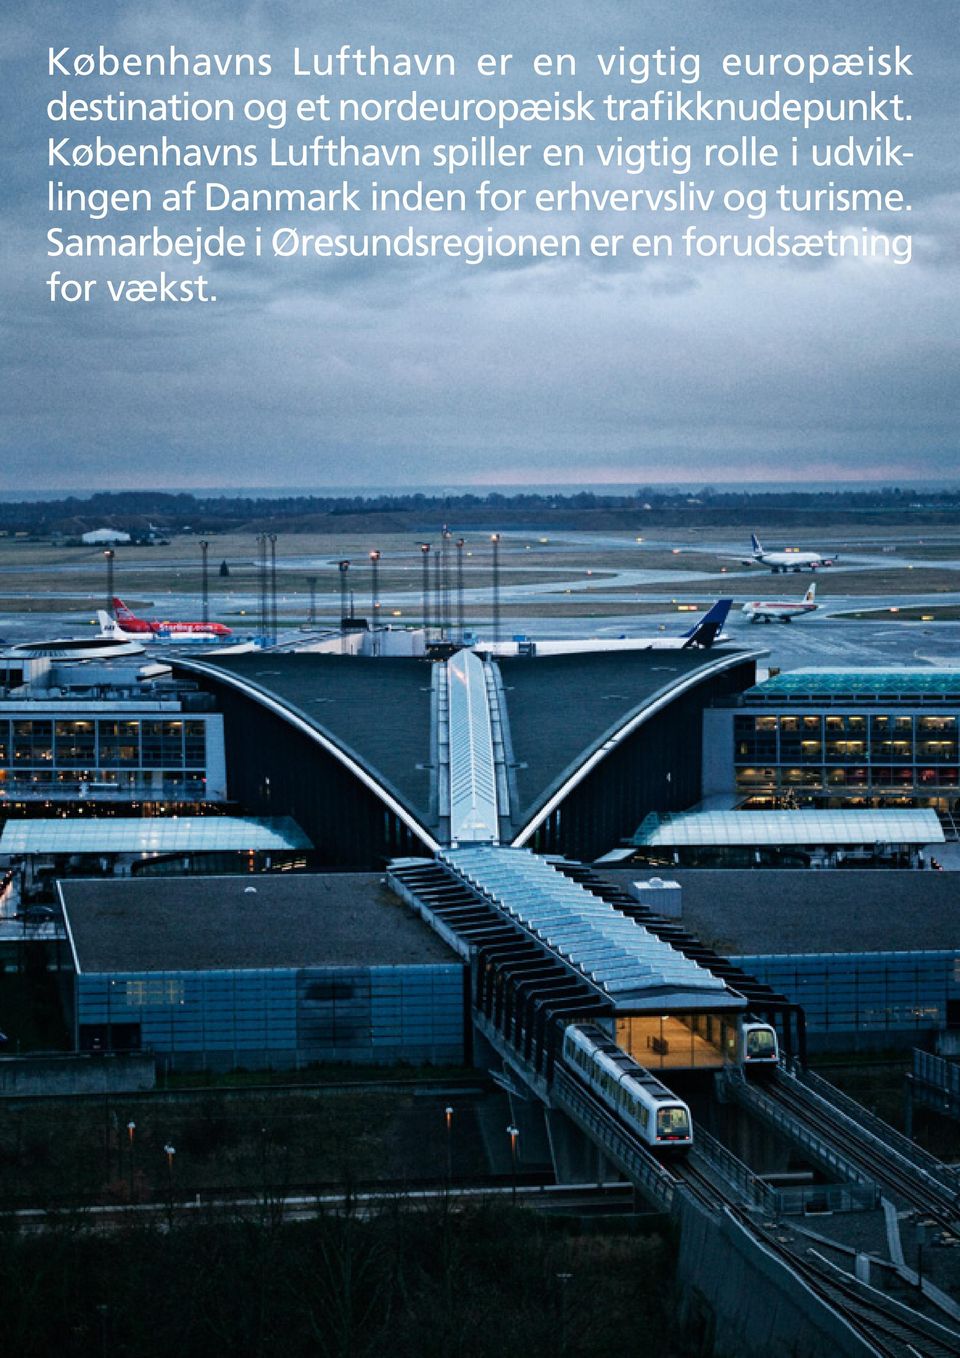 Københavns Lufthavn spiller en vigtig rolle i udviklingen af